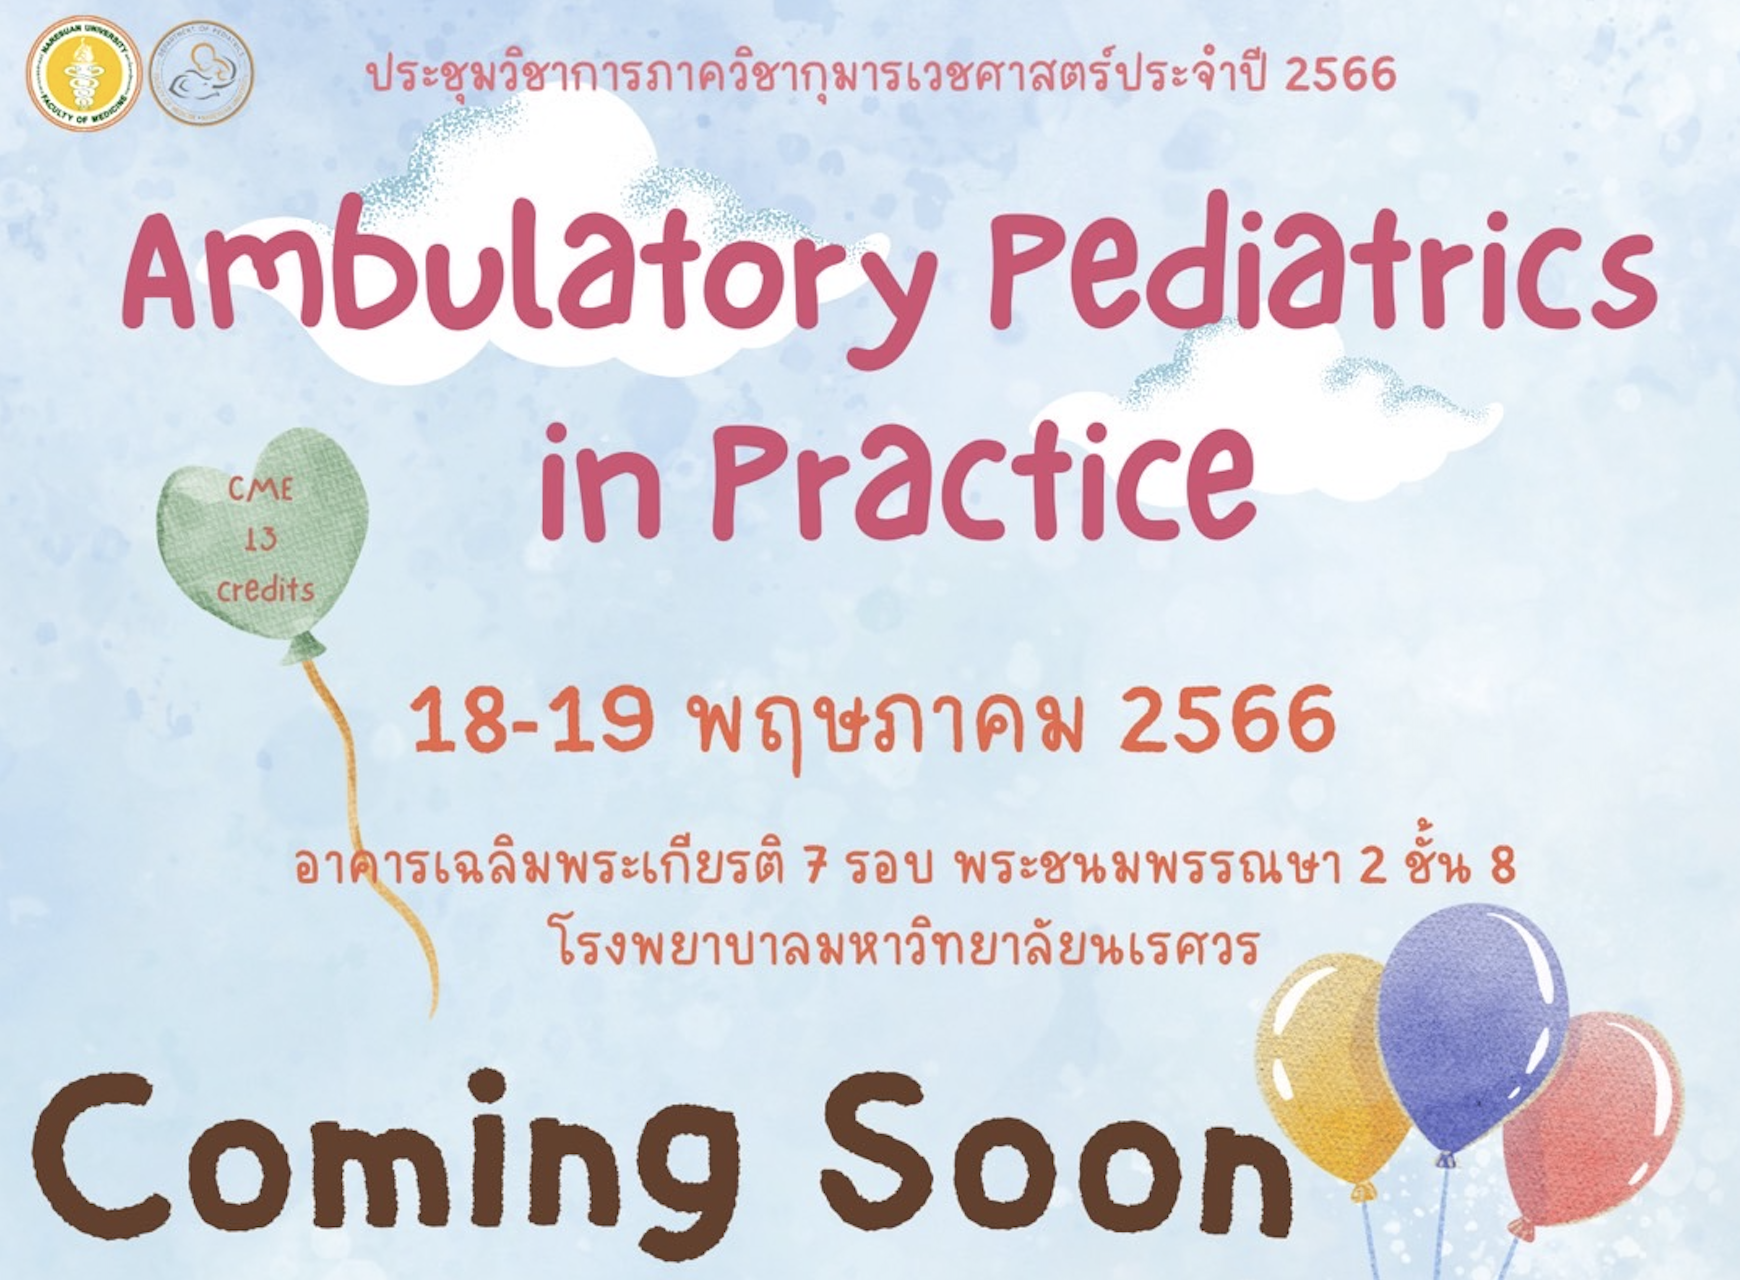 ประชุมวิชาการภาควิชากุมารเวชศาสตร์  2566 Ambulatory Pediatrics in Practice  